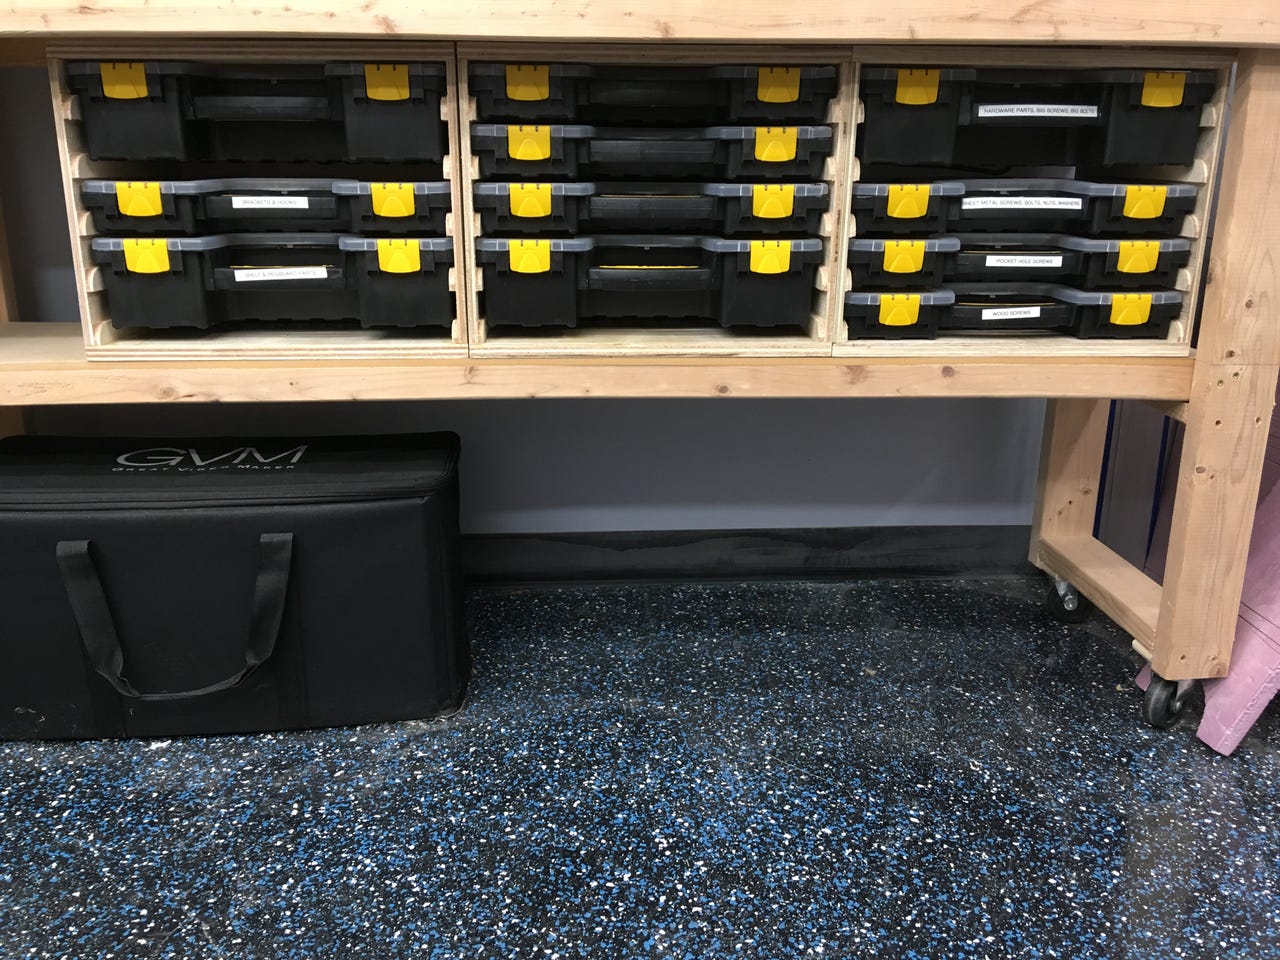 Hardware Storage Cabinet